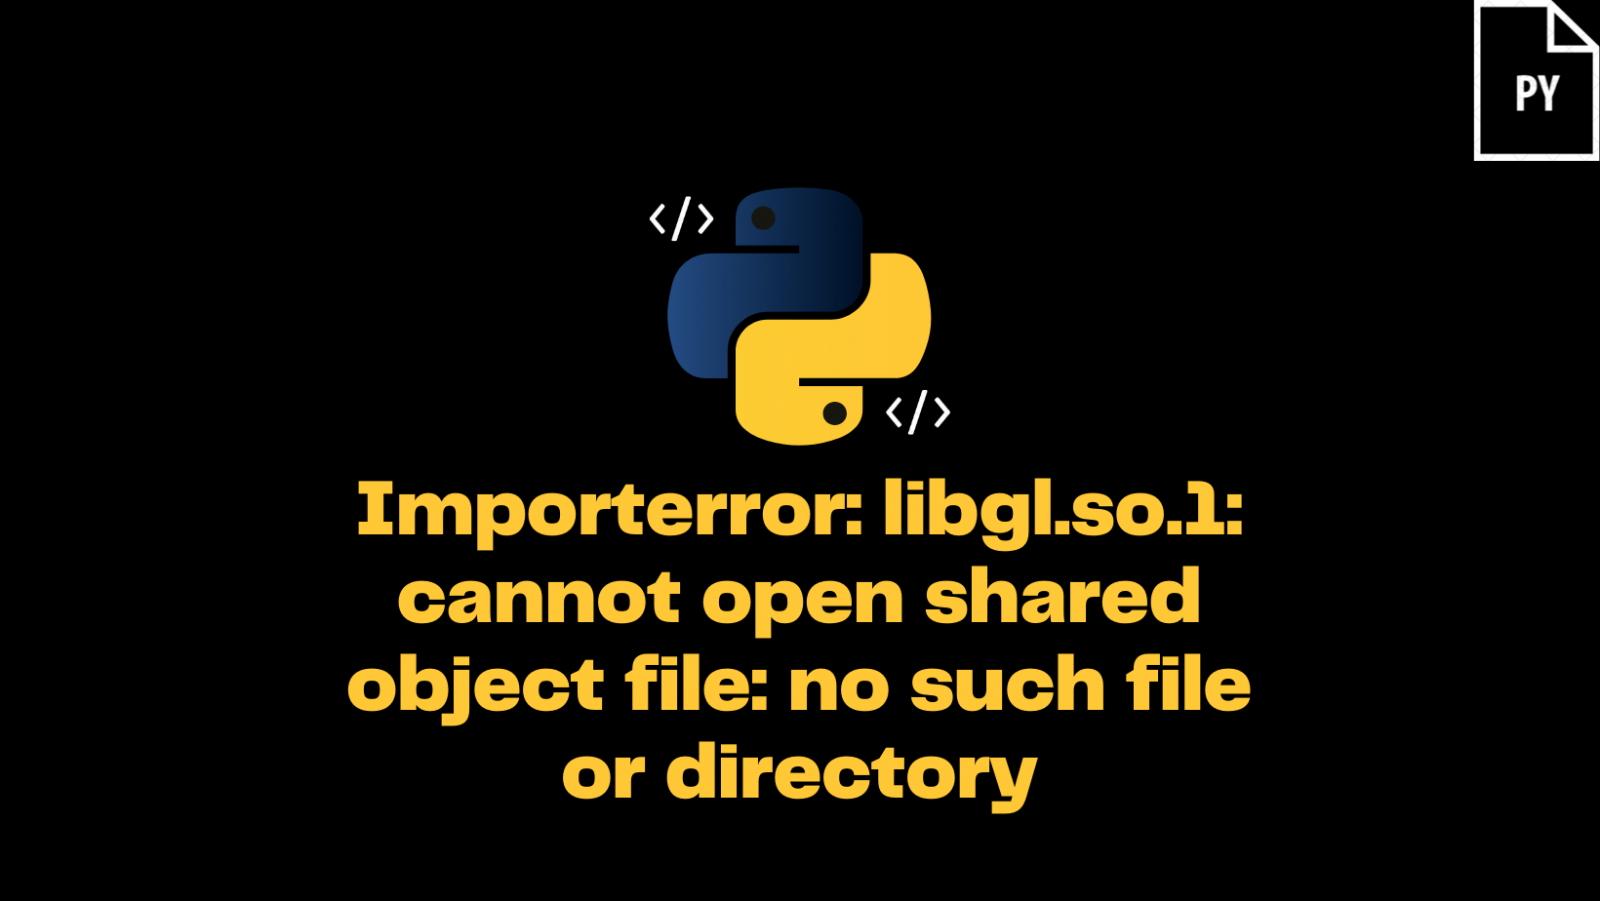 رفع خطای ImportError: libGL.so.1 در لینوکس اوبونتو و پایتون